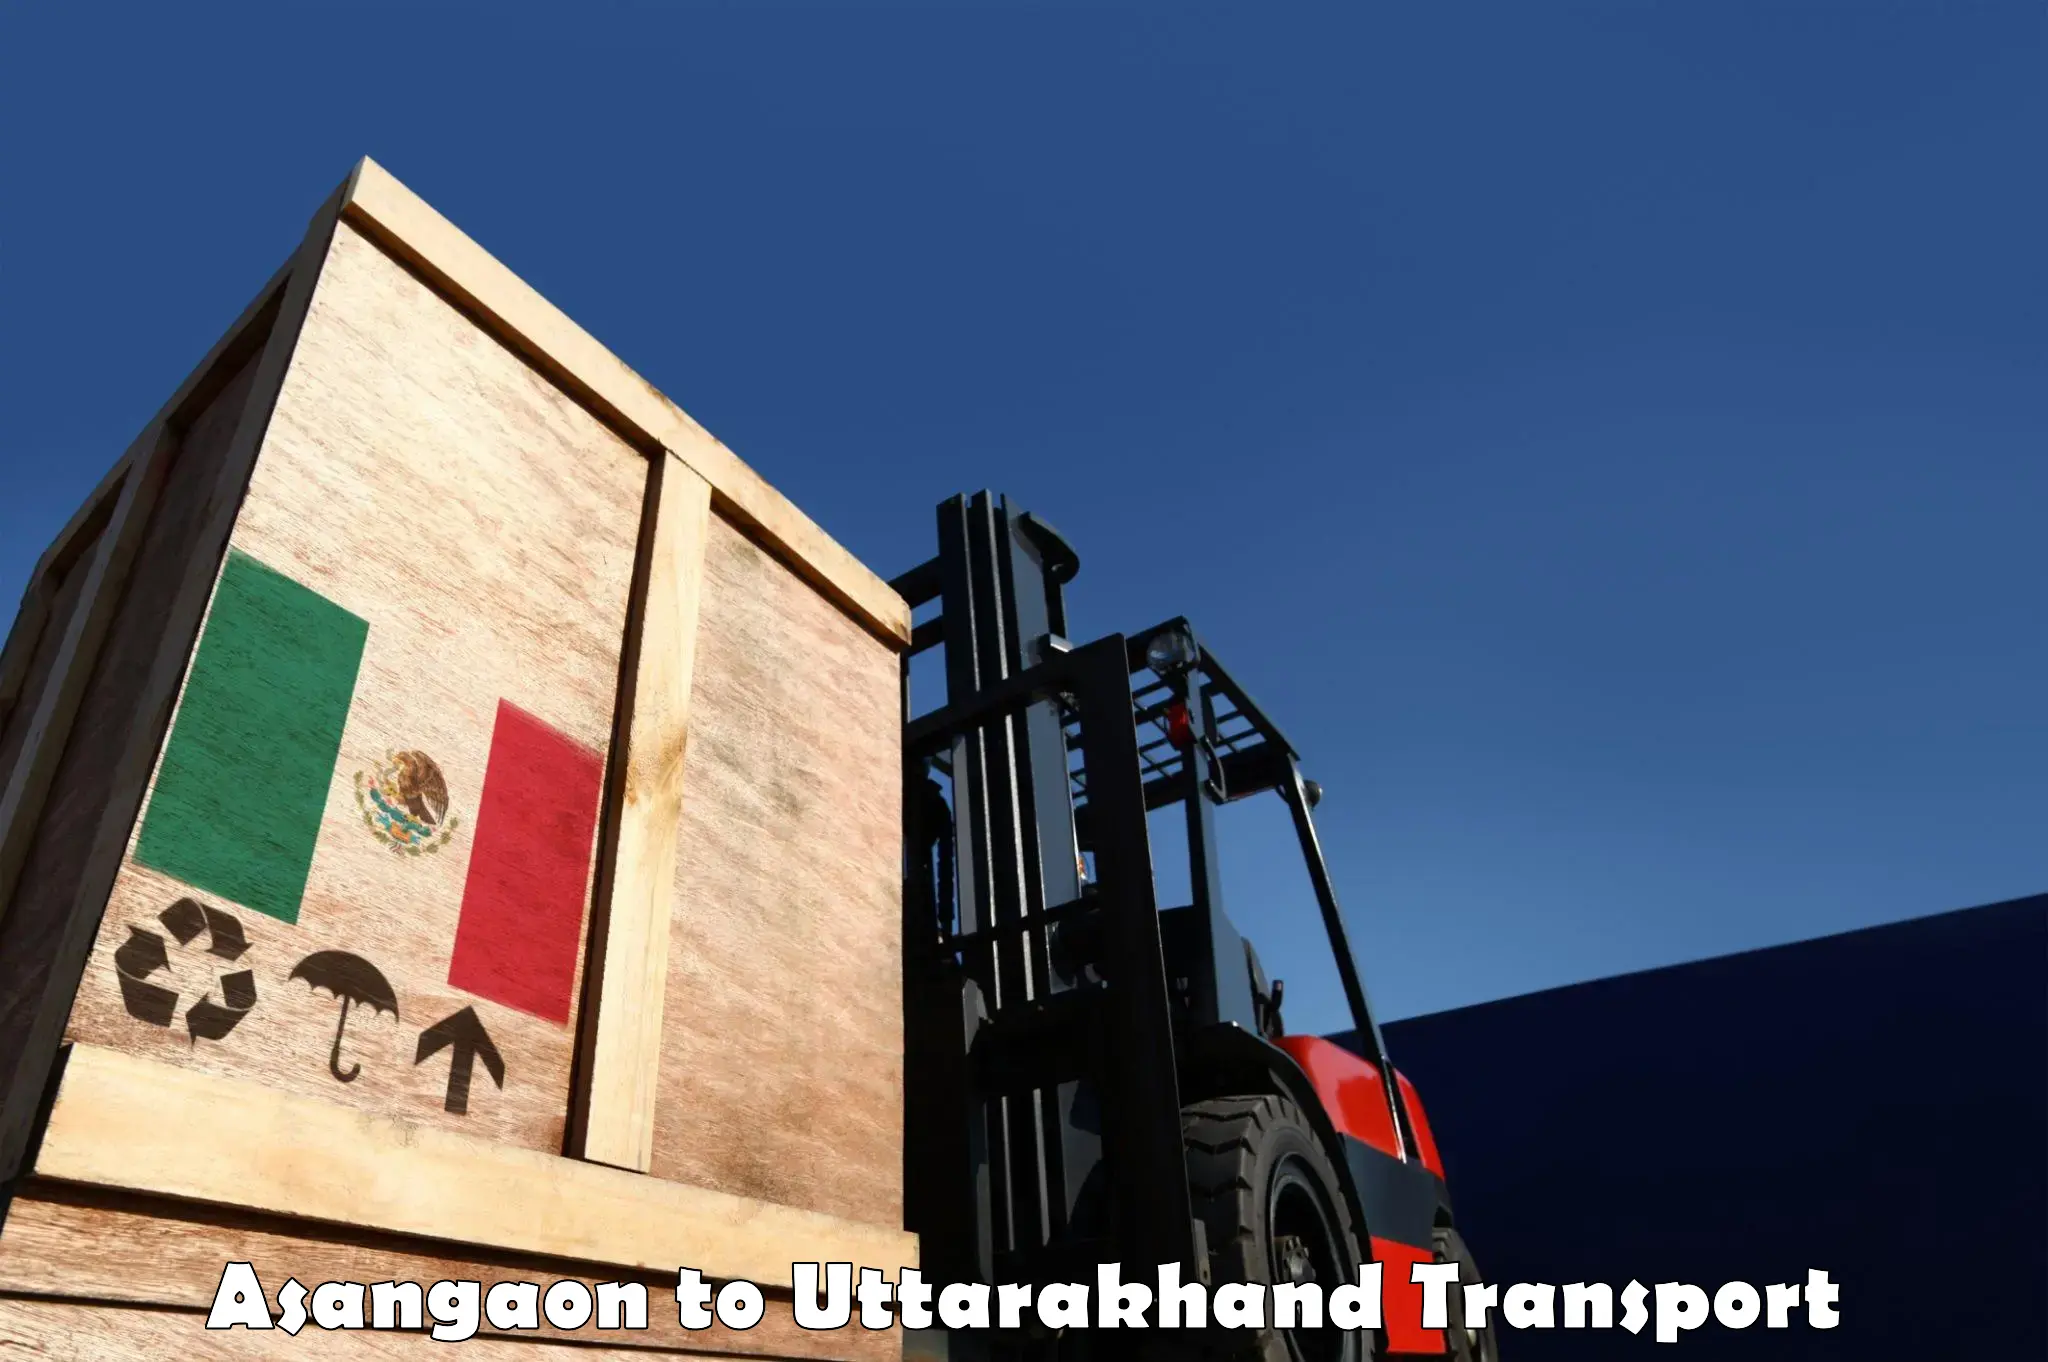 Intercity transport in Asangaon to Gairsain